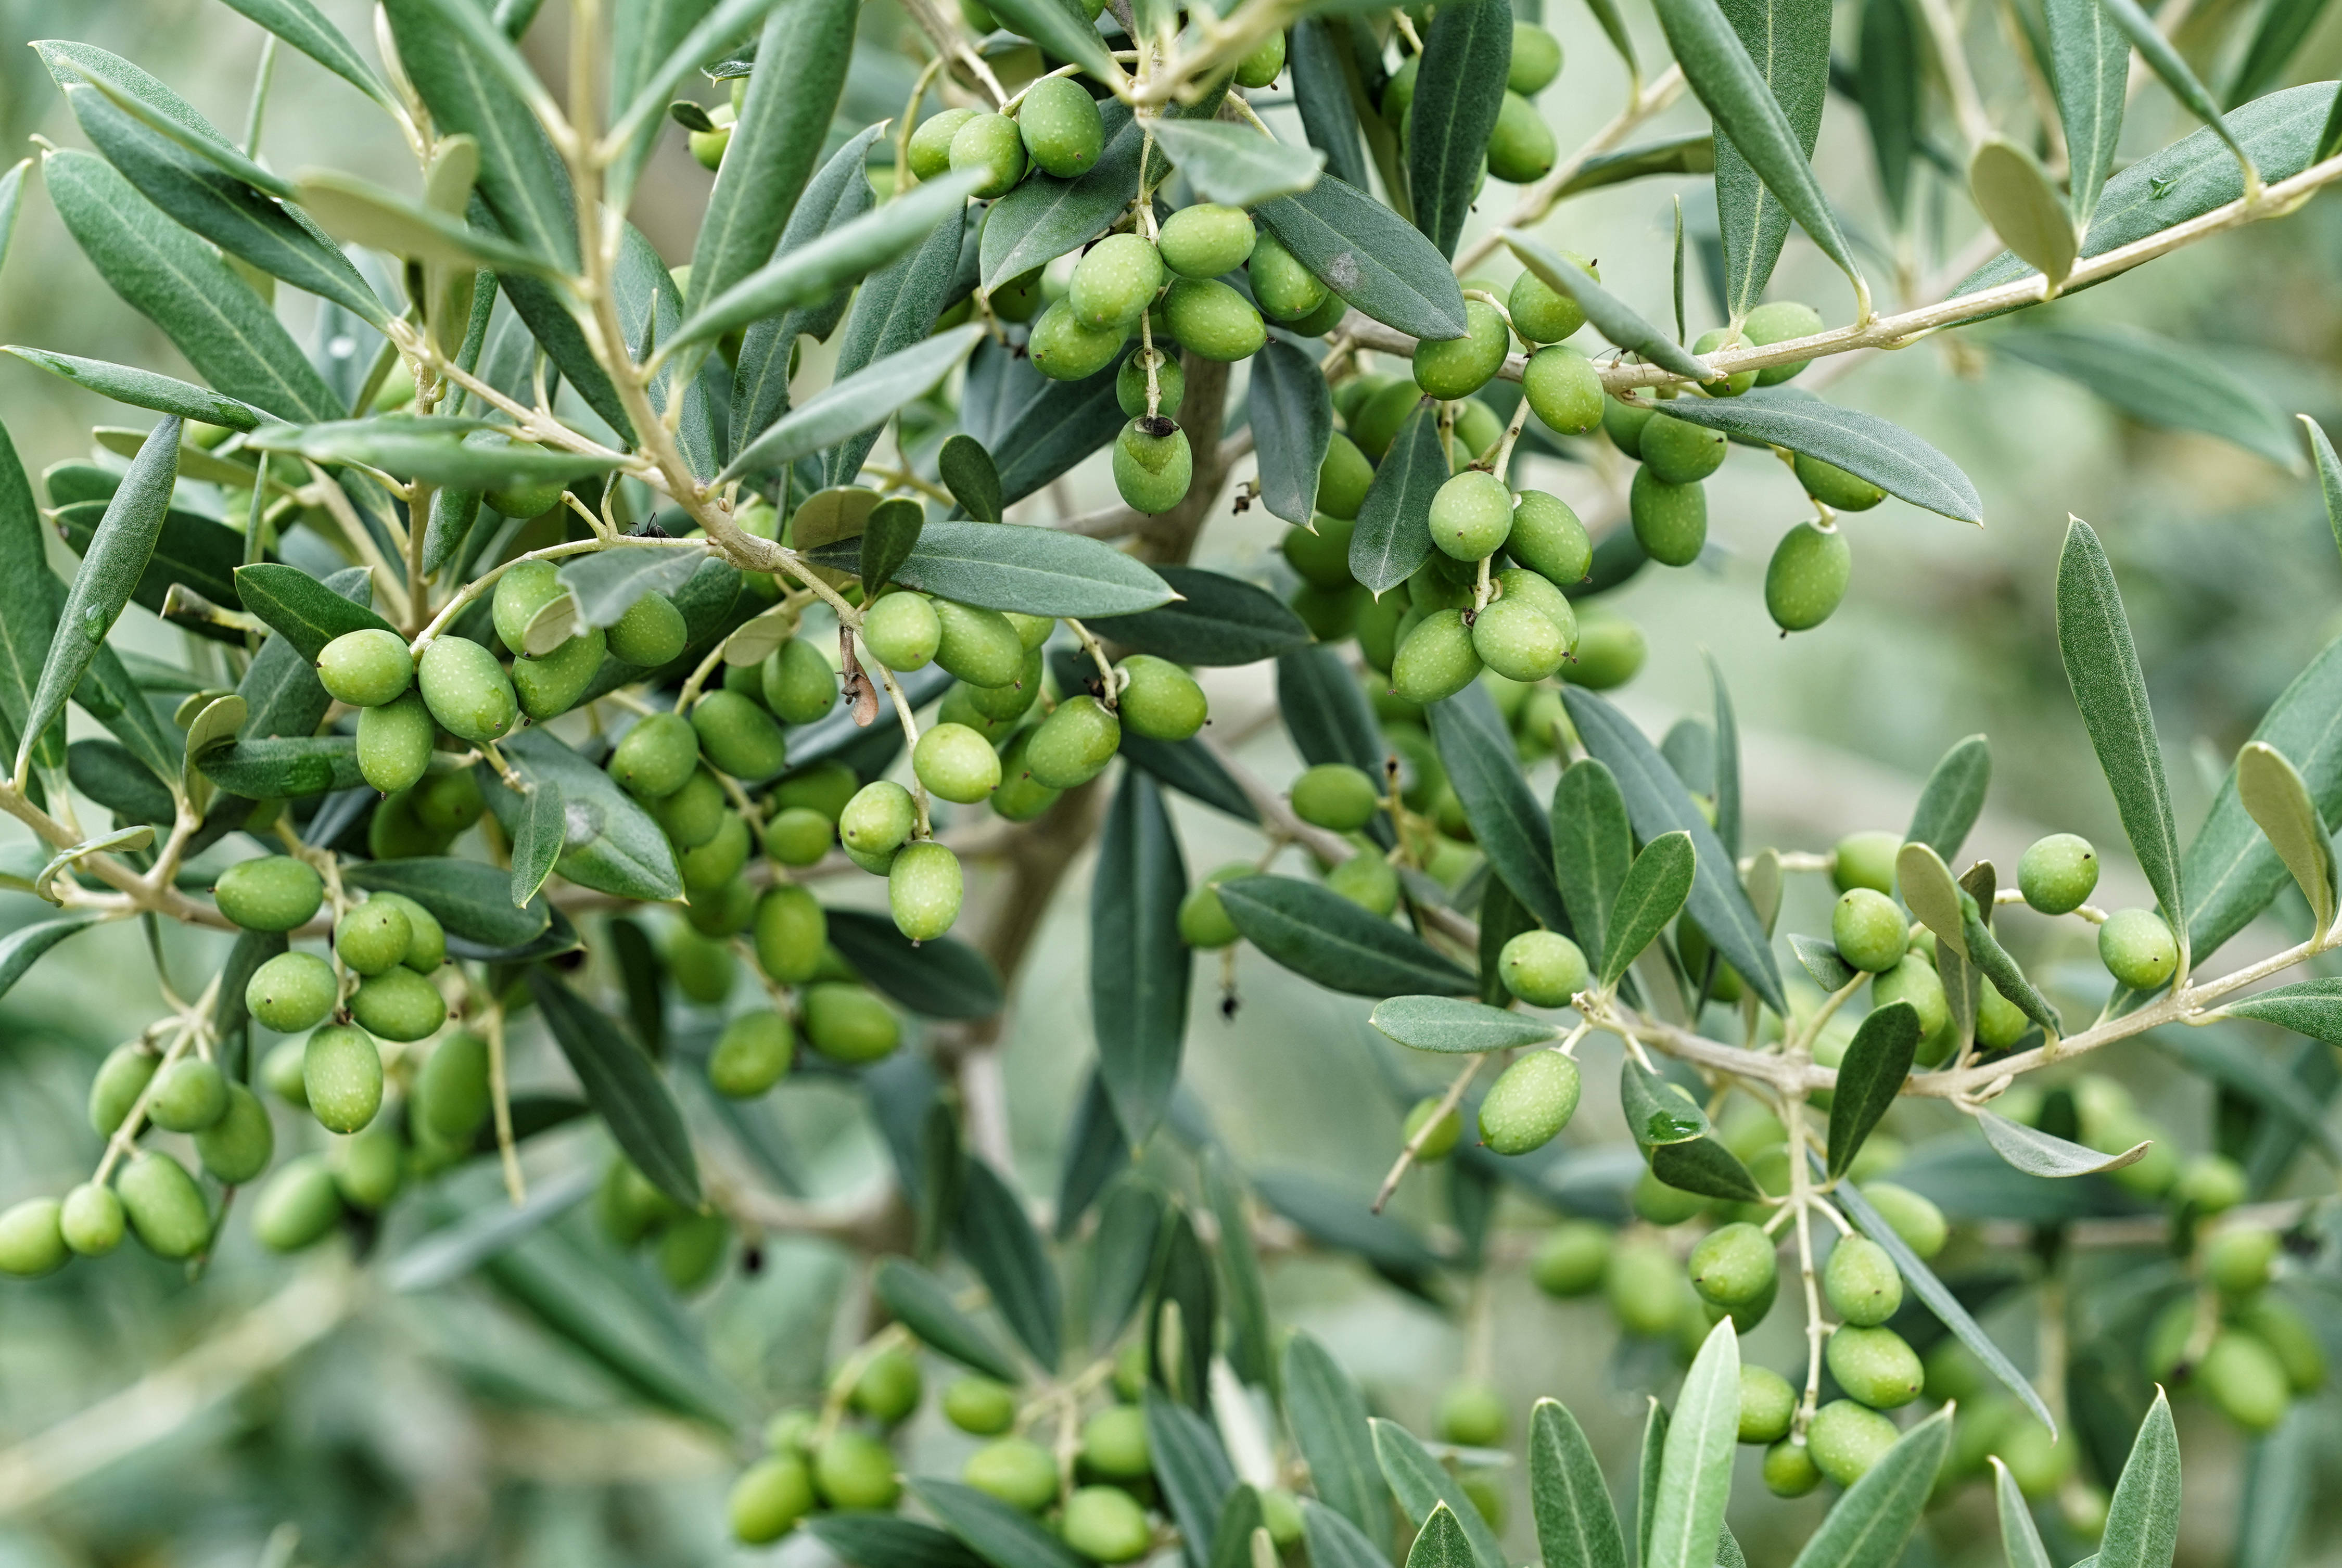 冕宁县宏模镇几个村引进油橄榄种植,采用矮化密植技术,建成连片高标准